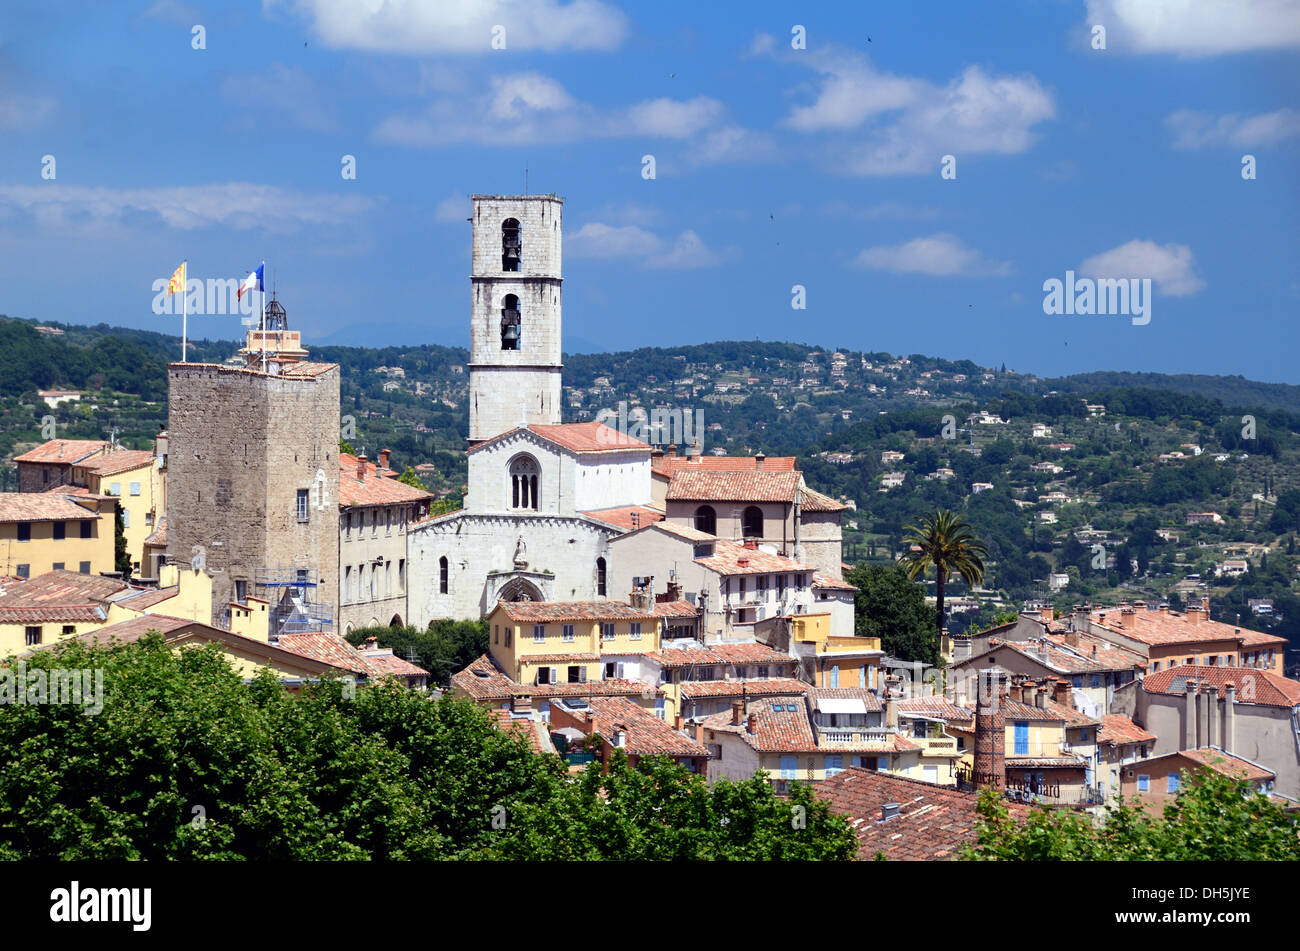 Vue panoramique sur la cathédrale la vieille ville et le centre historique de Grasse Alpes-Maritimes France Banque D'Images